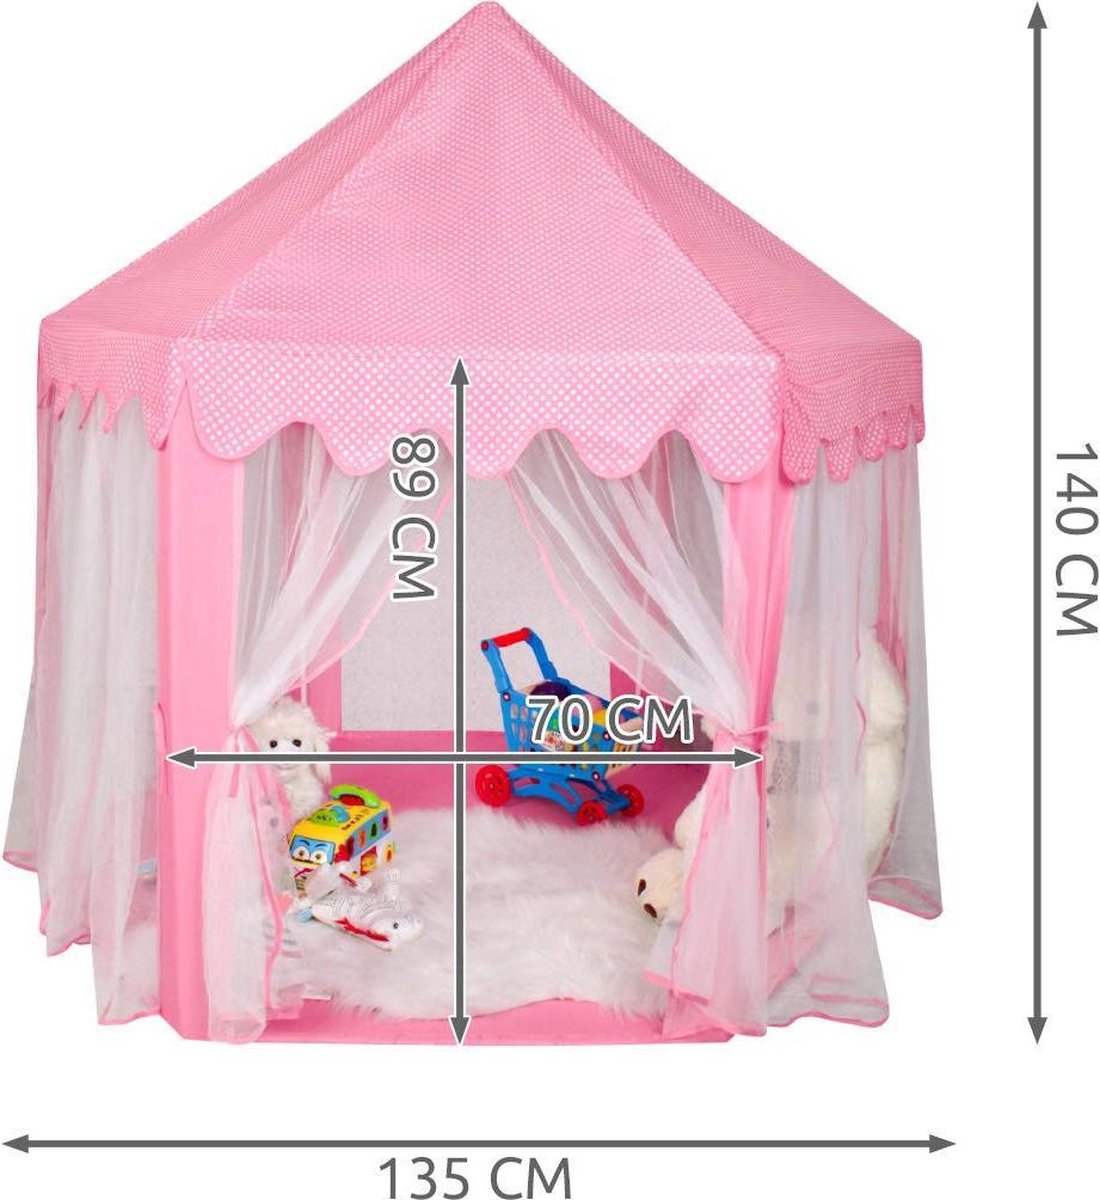 Tente de jeu pour enfants XL - Play Castle - Tente de jeu Princess - Rose 